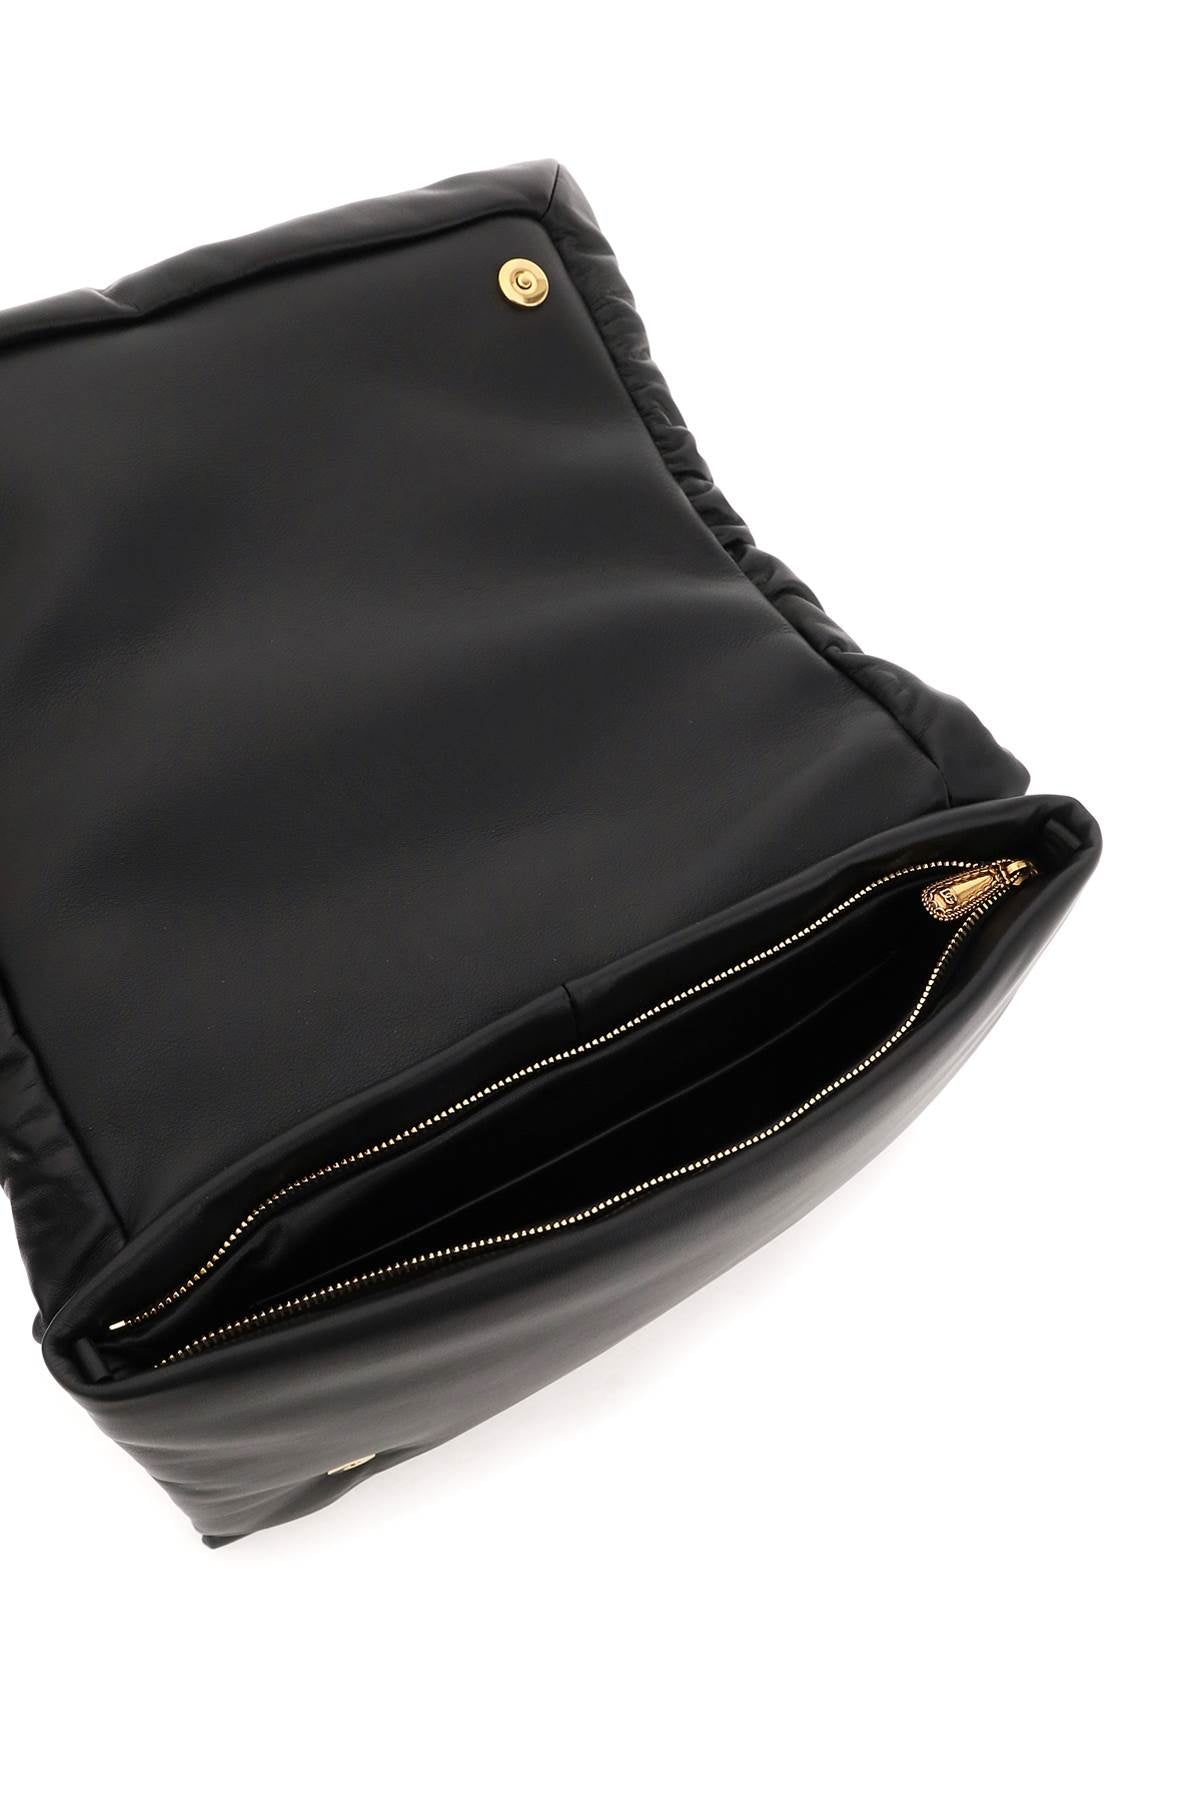 經典品牌手工製作 黑色敬奉款女裝斜背手提袋 - FW23 系列